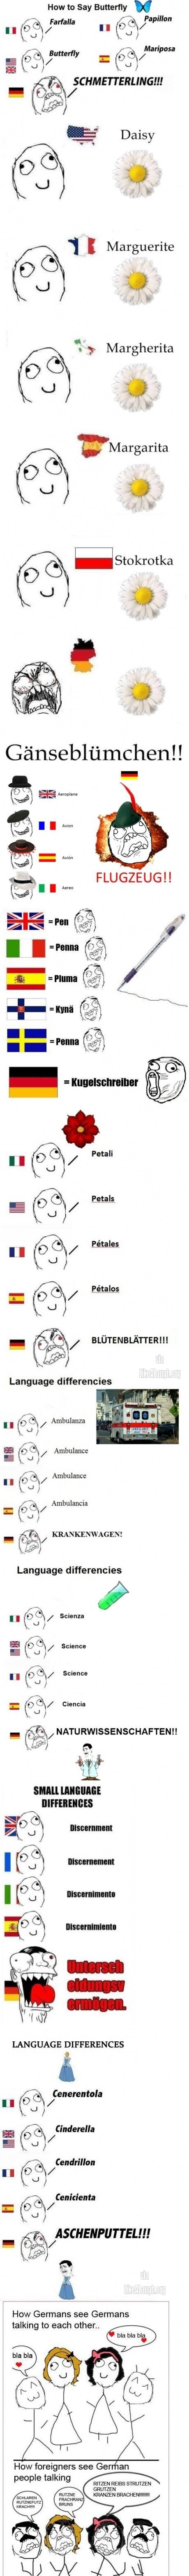 El idioma aleman